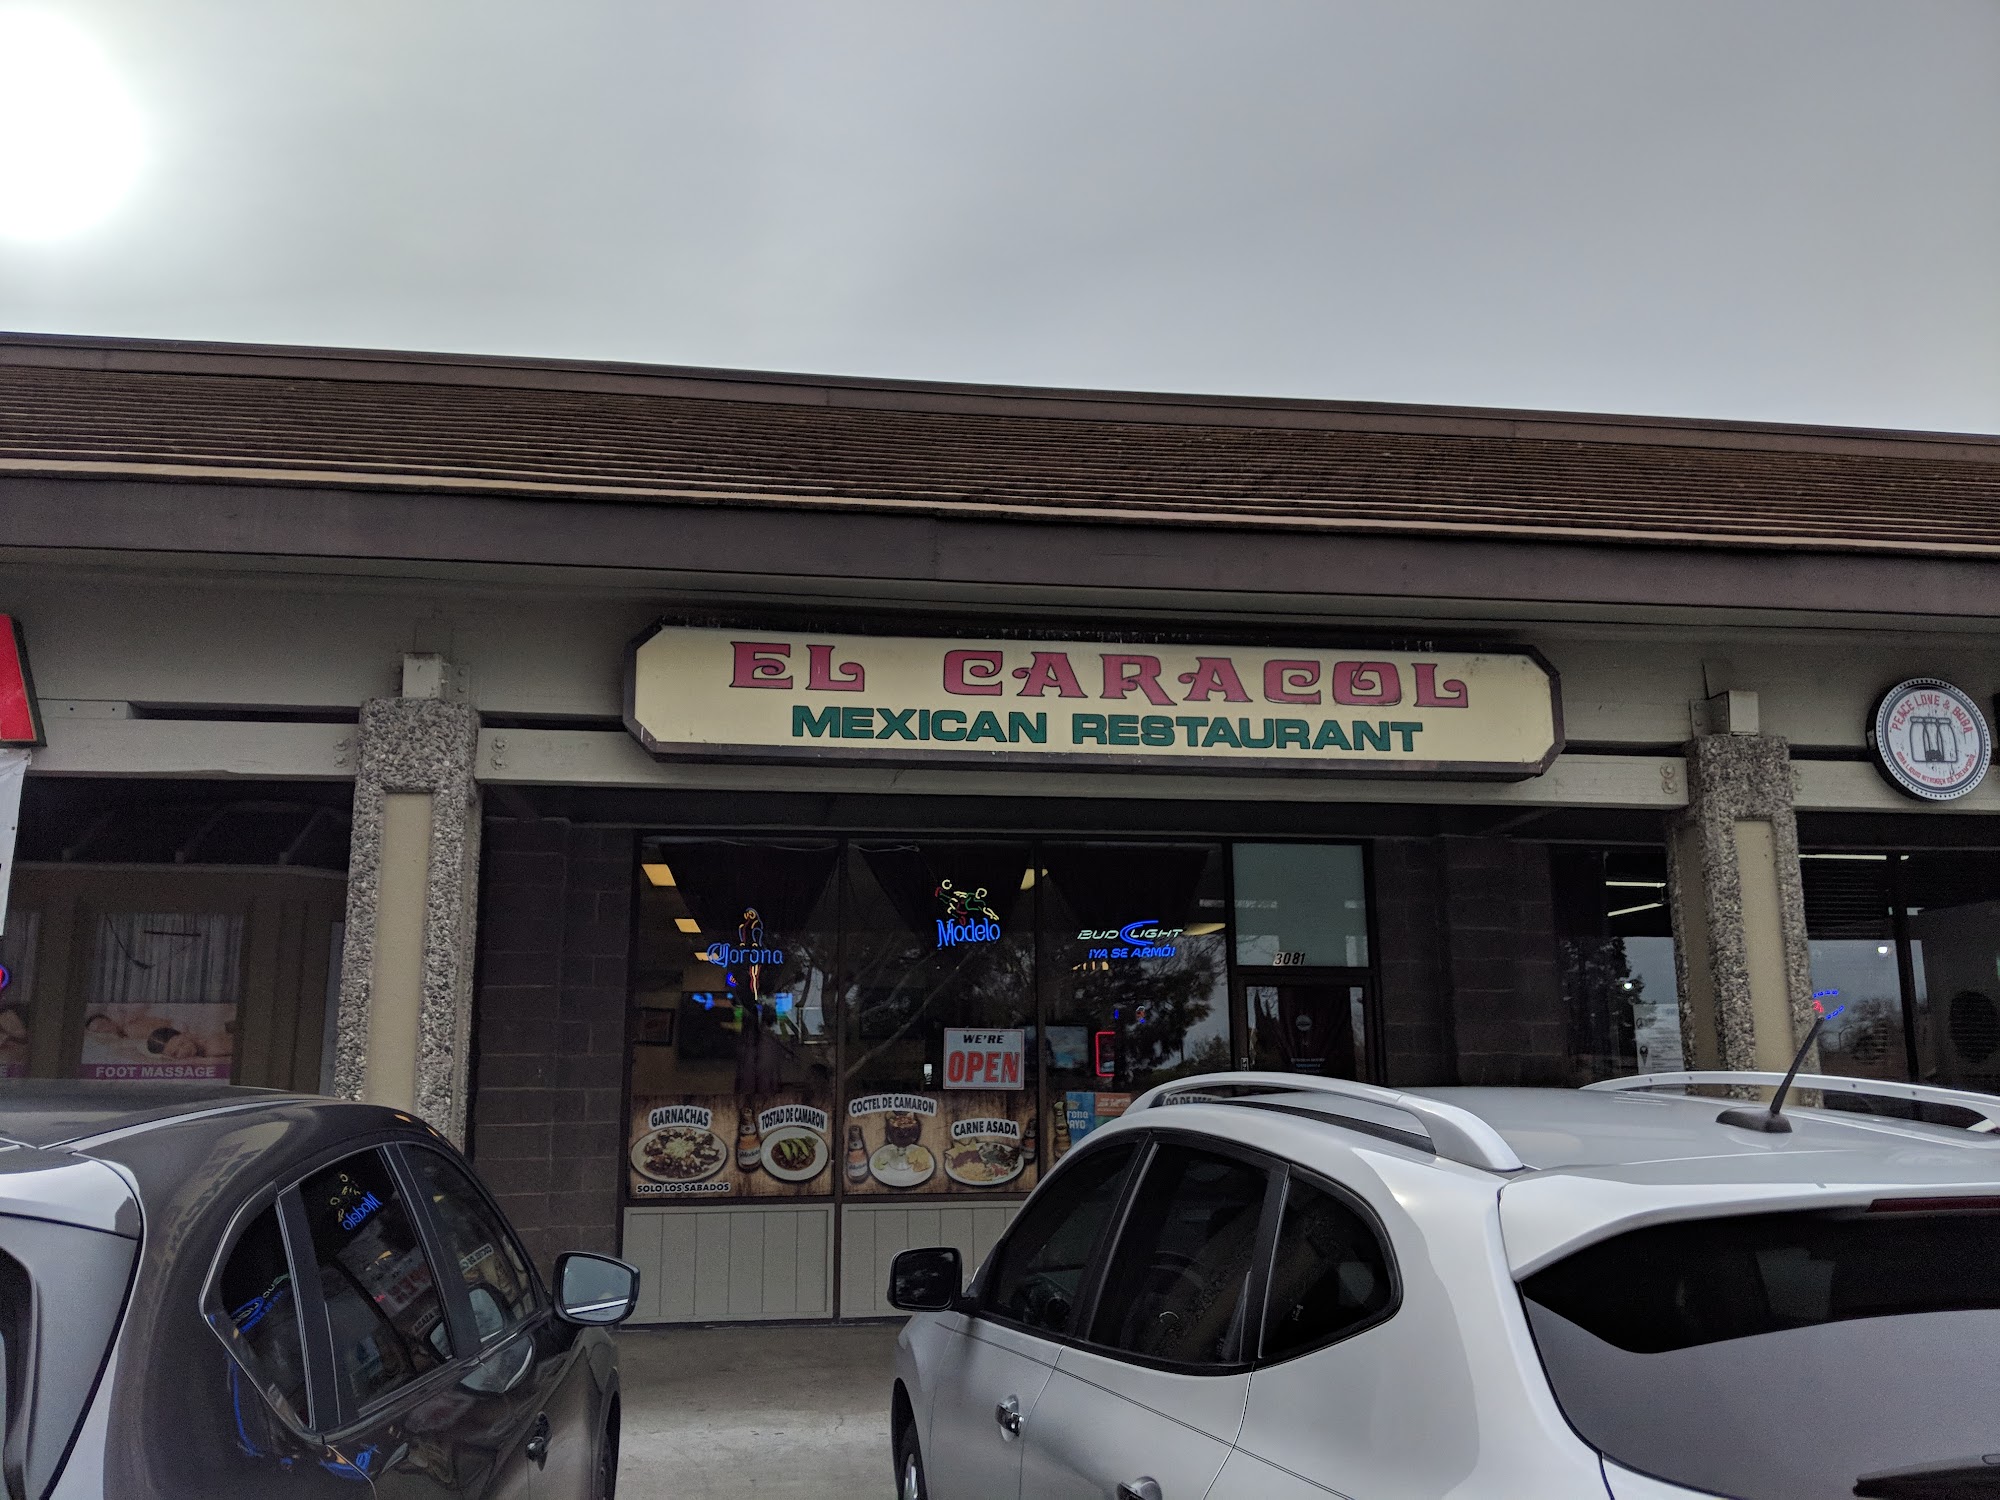 El Caracol Mexican Restaurant